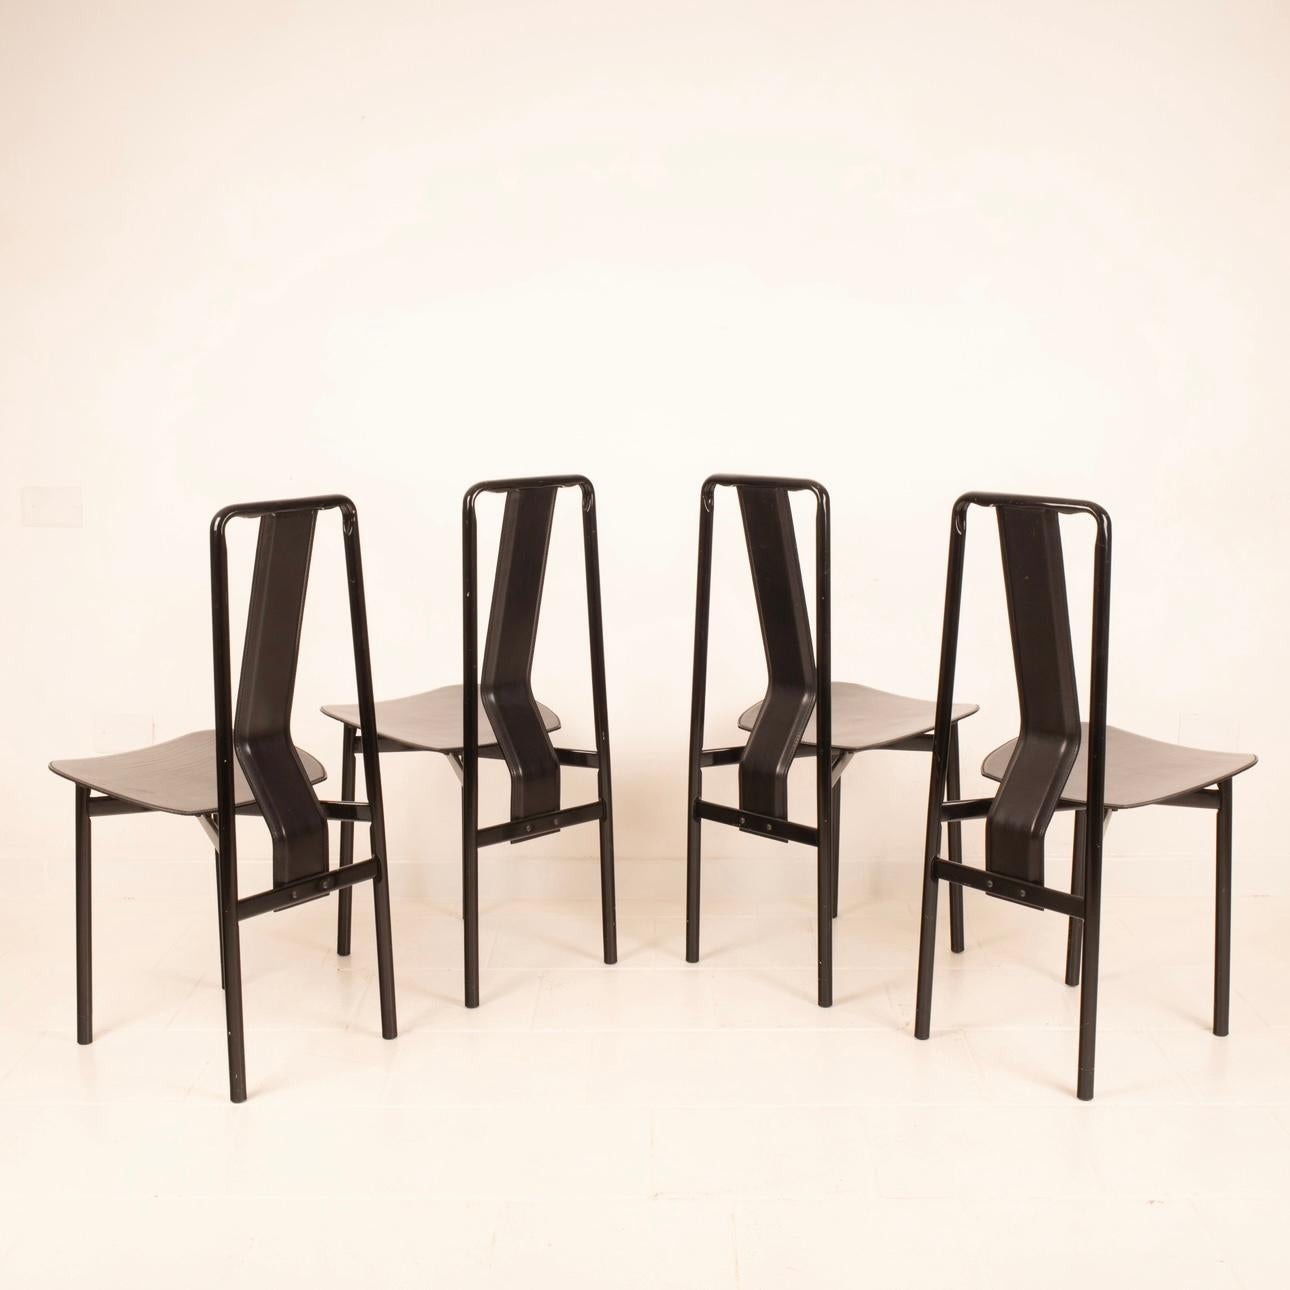 Iconico set di 4 sedie IRMA disegnate da Achille Castiglioni negli anni '70 e prodotte dalla rinomata azienda italiana Zanotta. Le sedie sono caratterizzate da una struttura in acciaio smaltato nero lucido e sedile in pelle spessa nera. In ottime